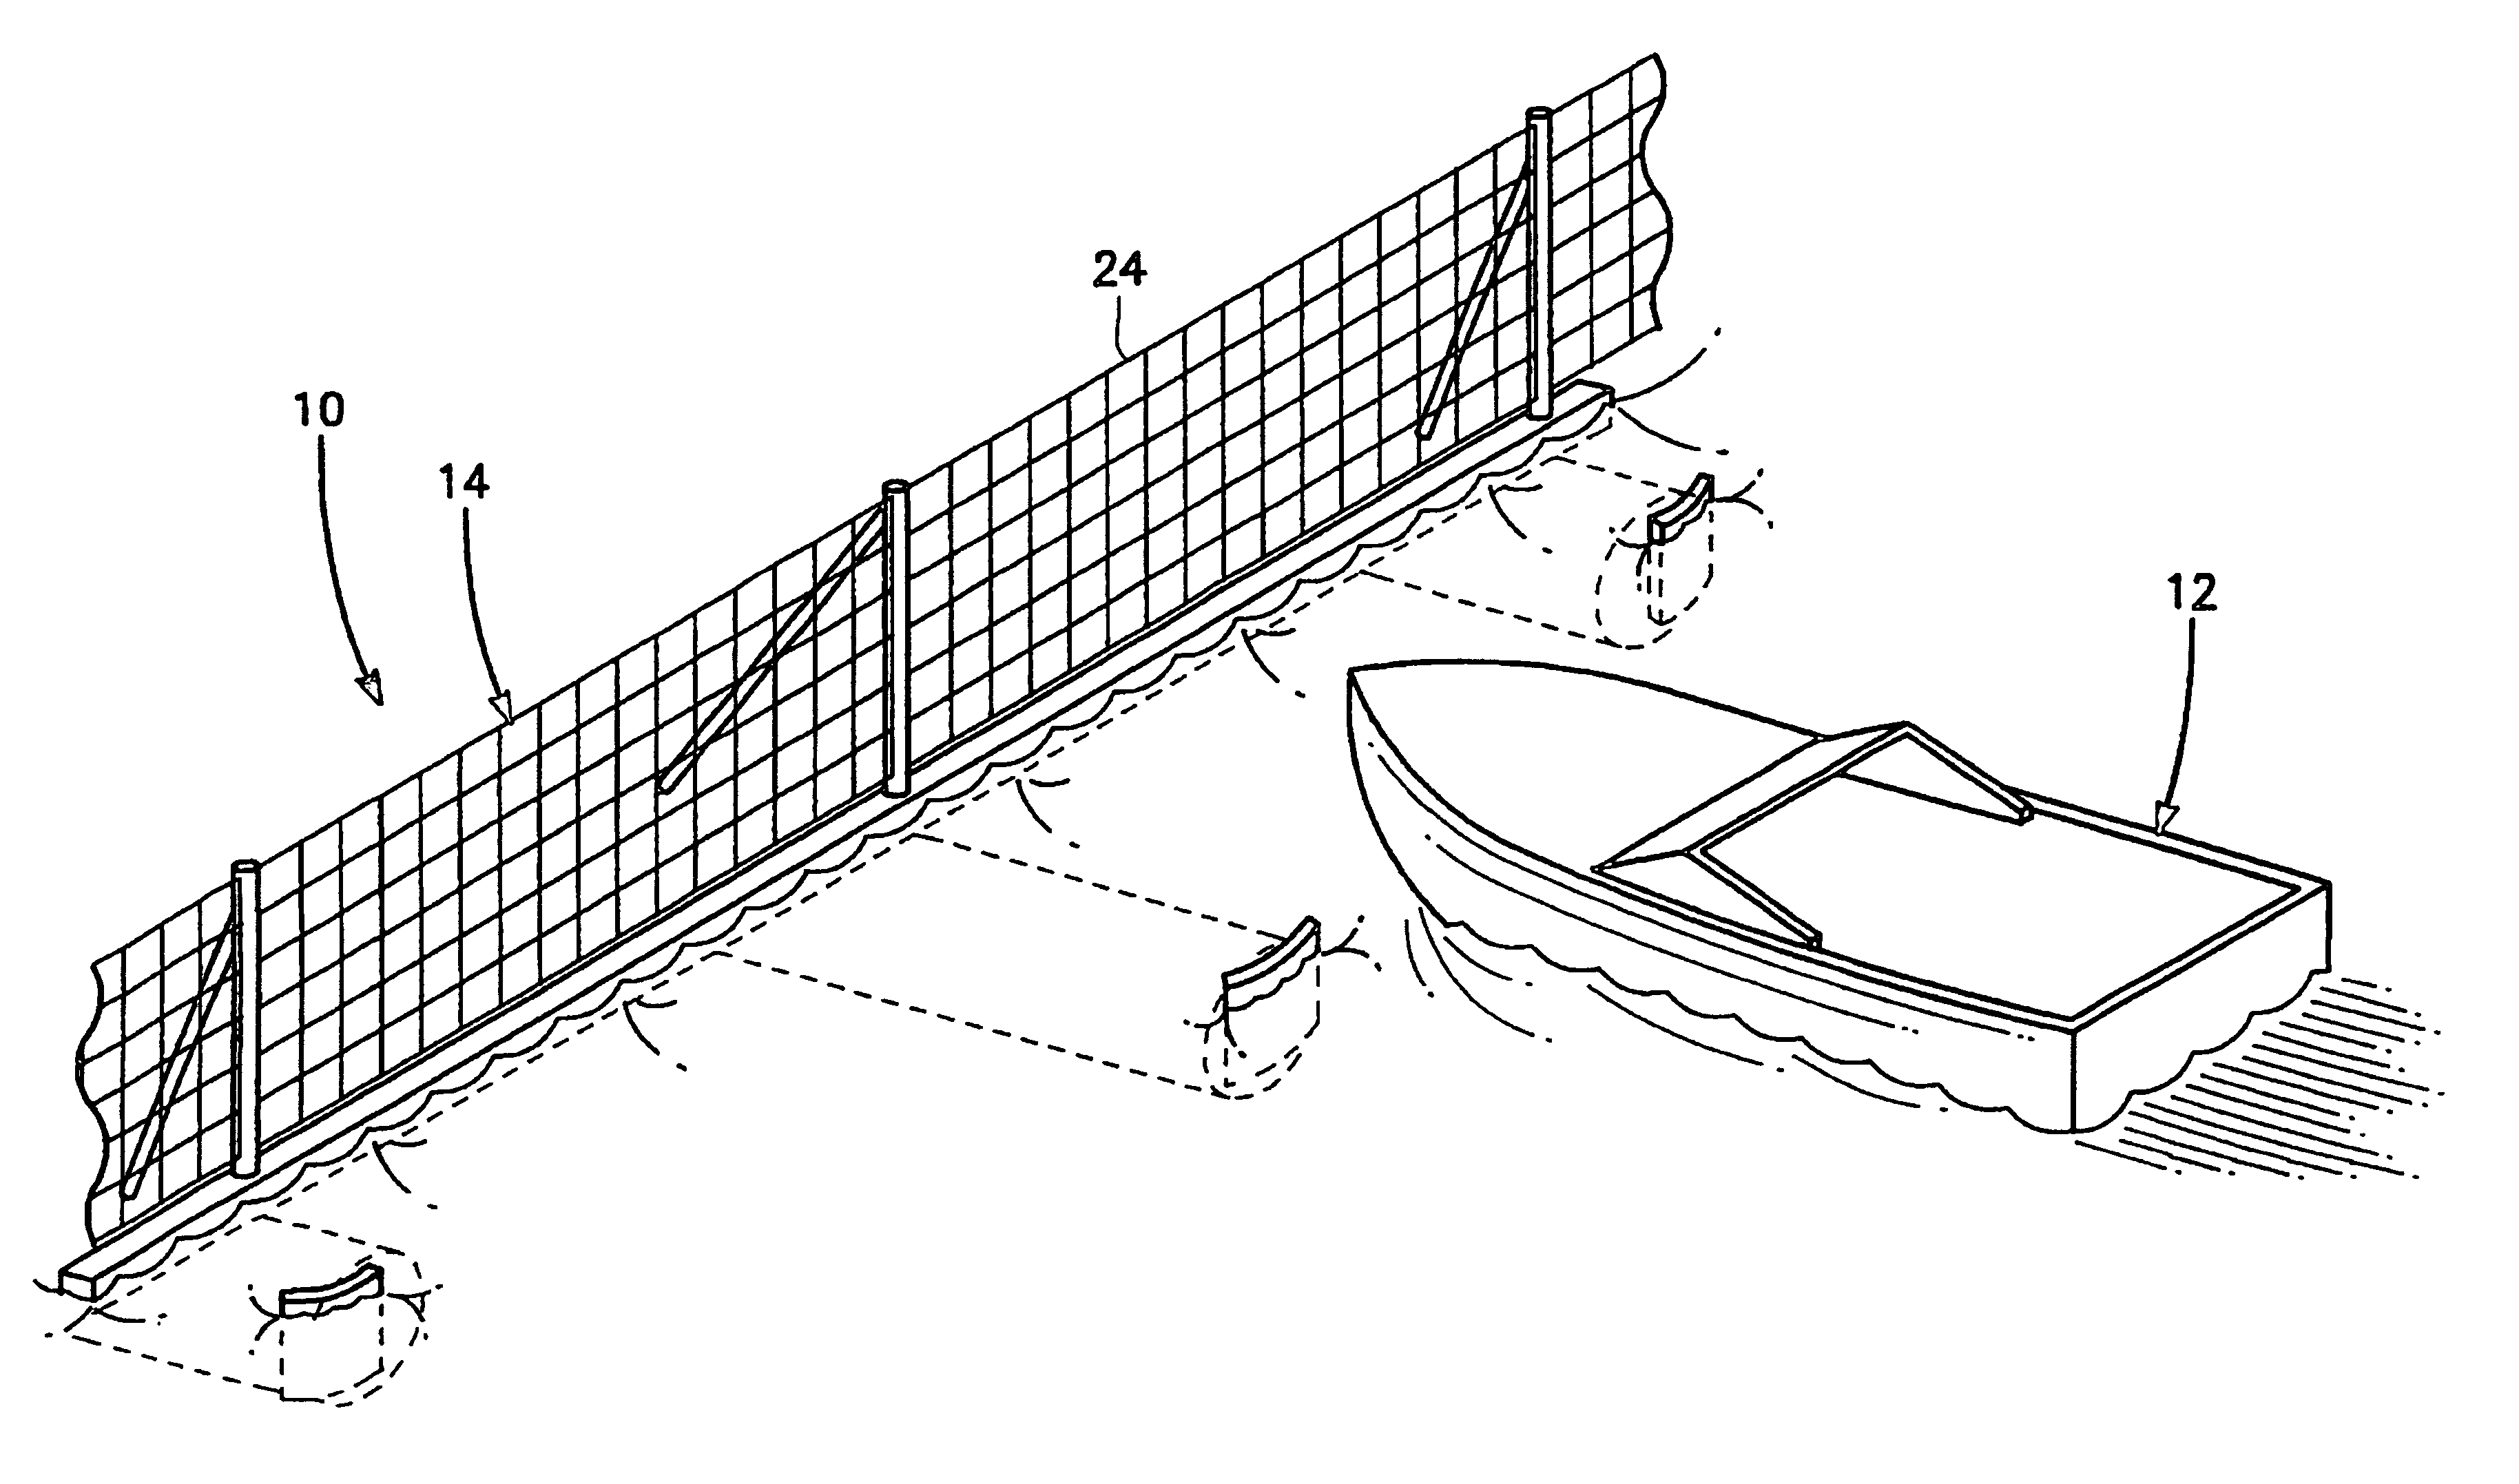 Port security barrier system